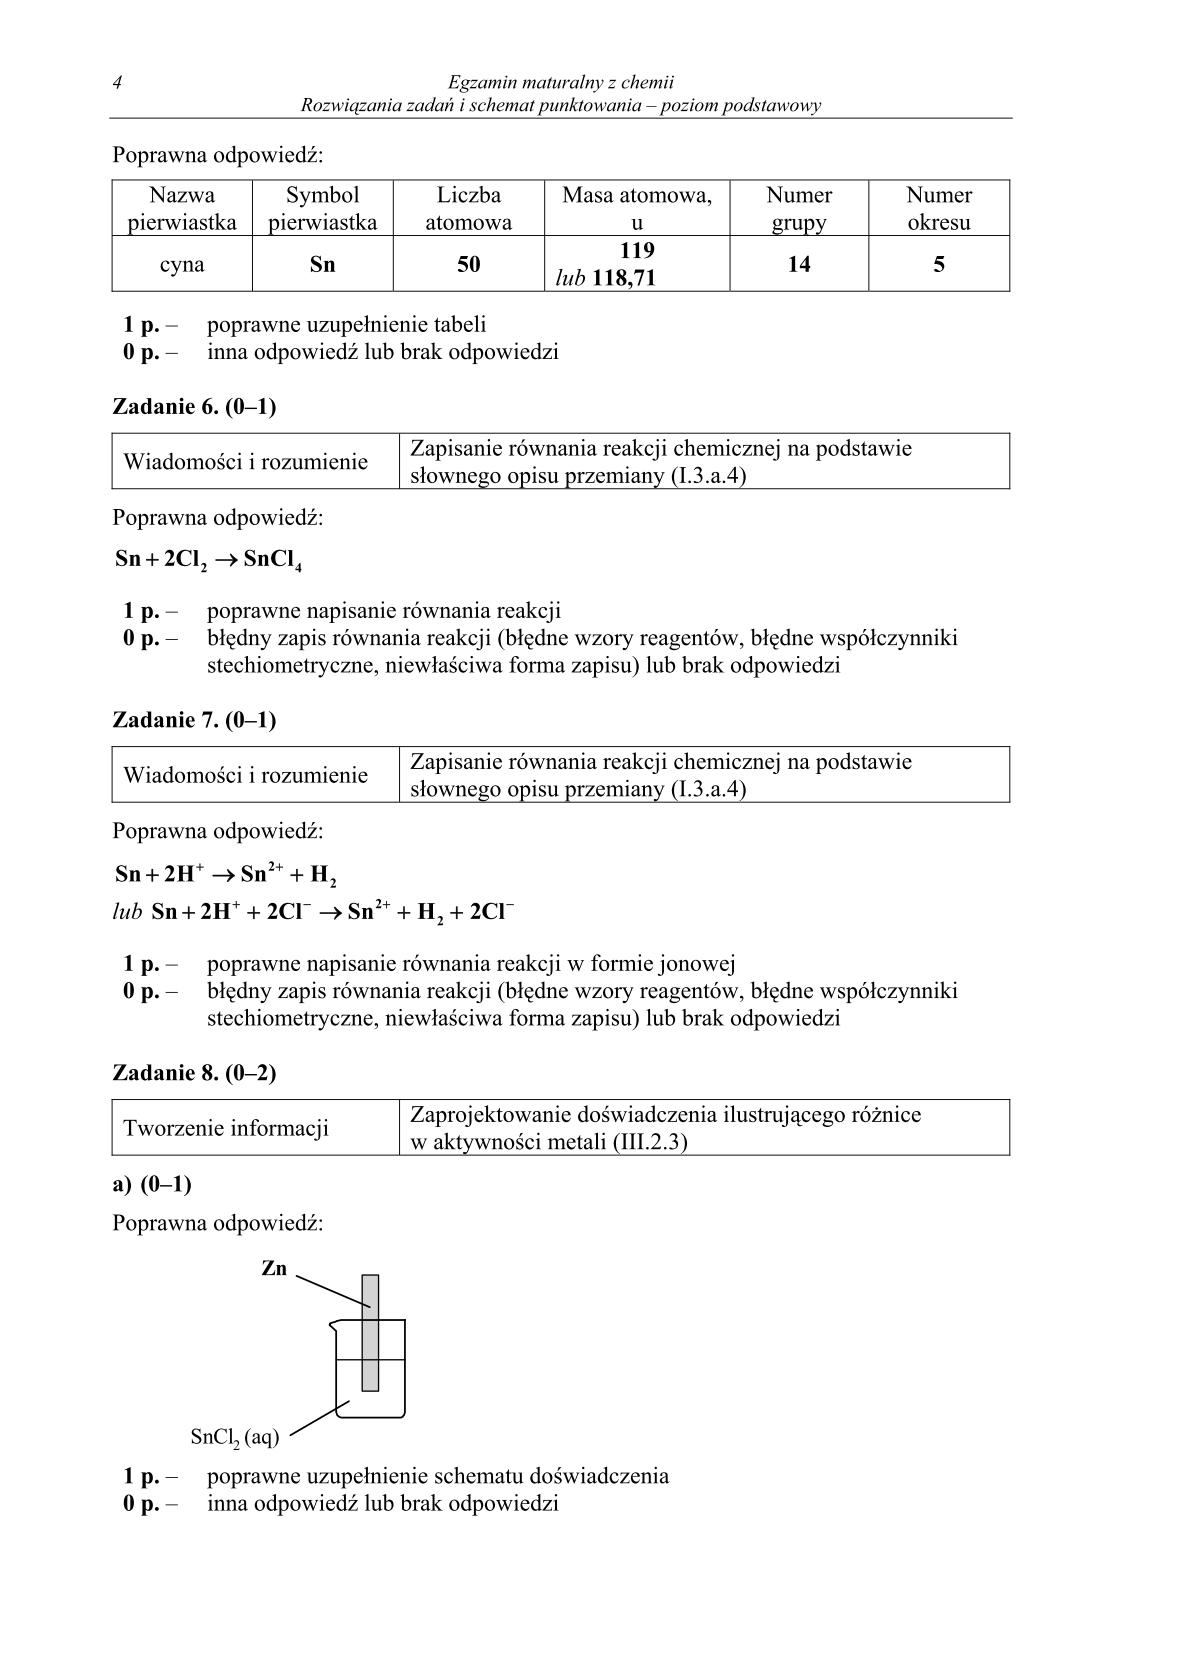 odpowiedzi-chemia-poziom-podstawowy-matura-2014-str.4